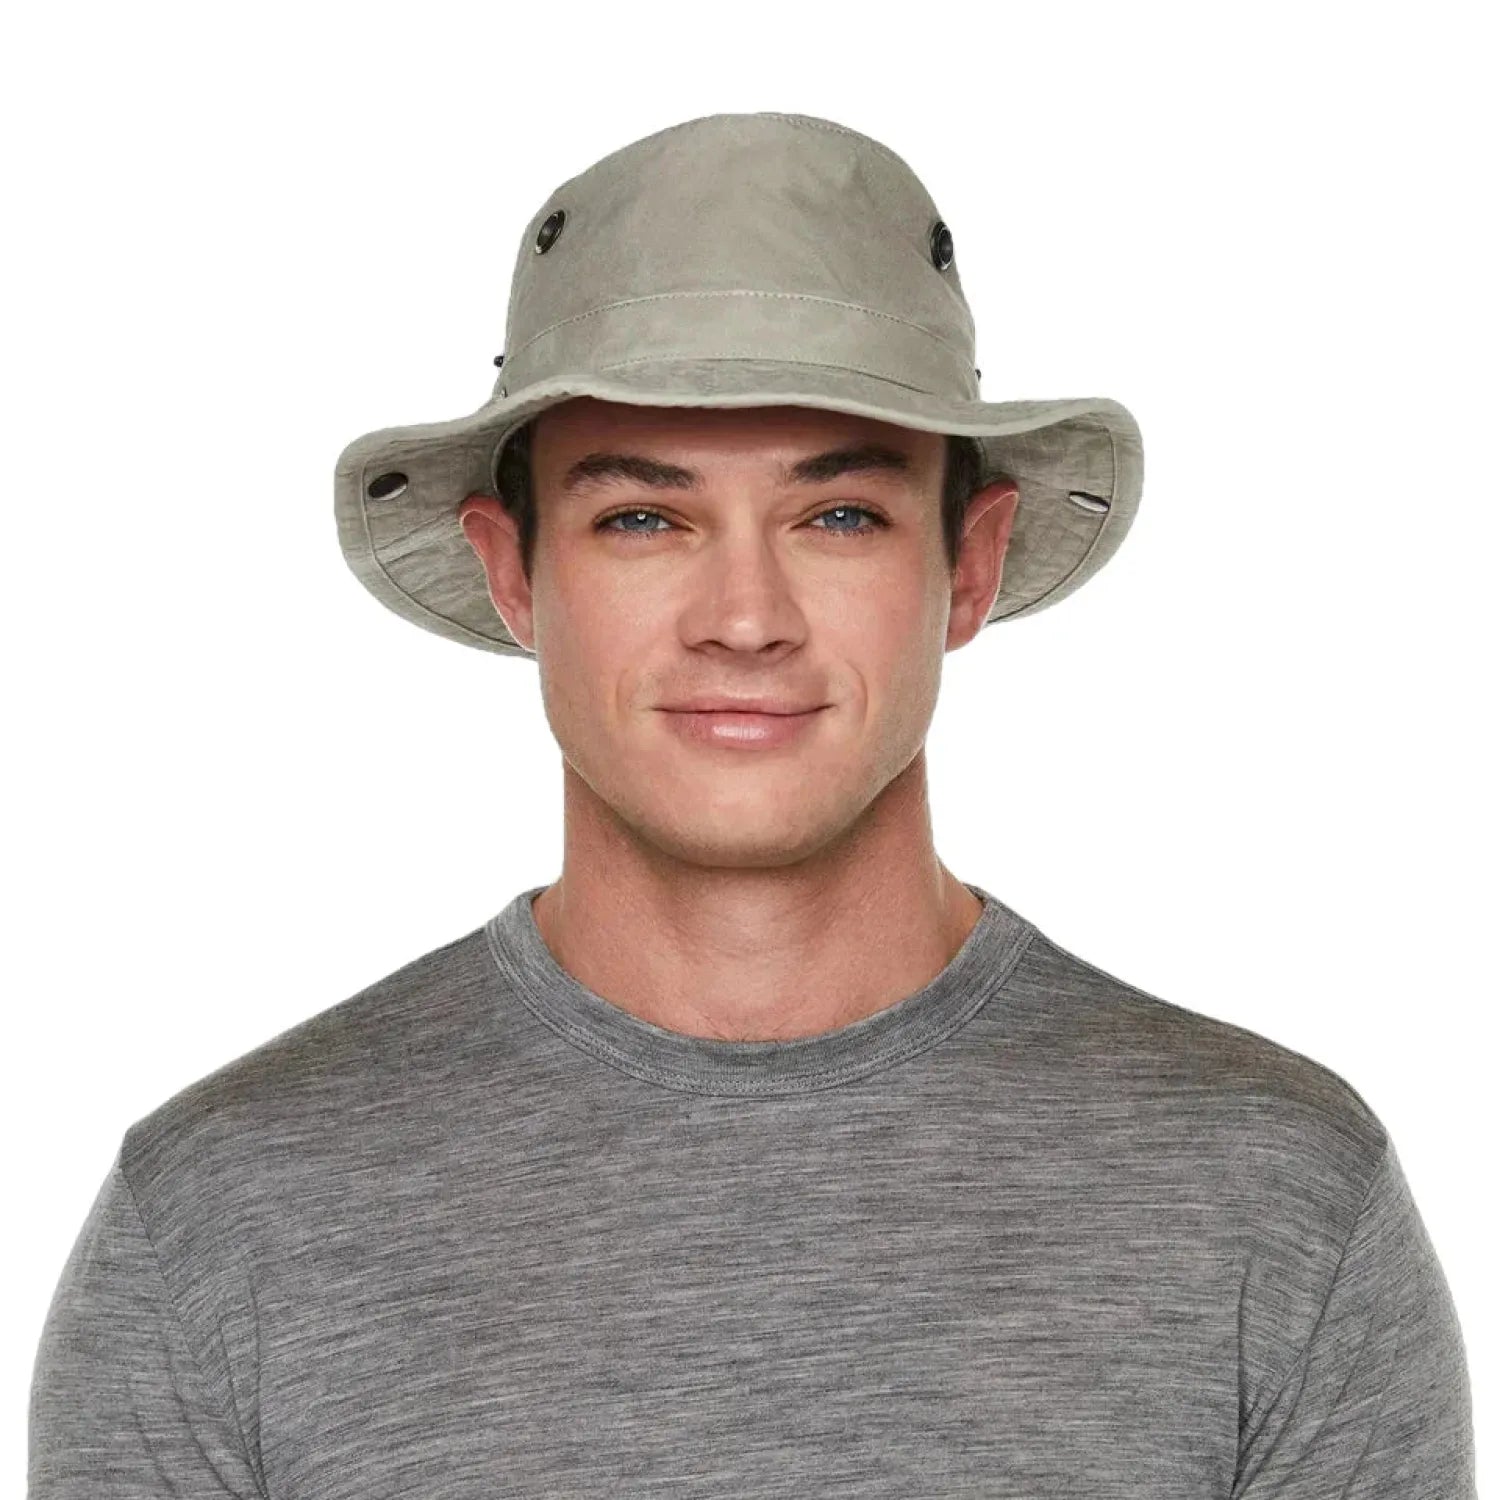 Tilley's T3 Wanderer Hat shown in Khaki on a model.